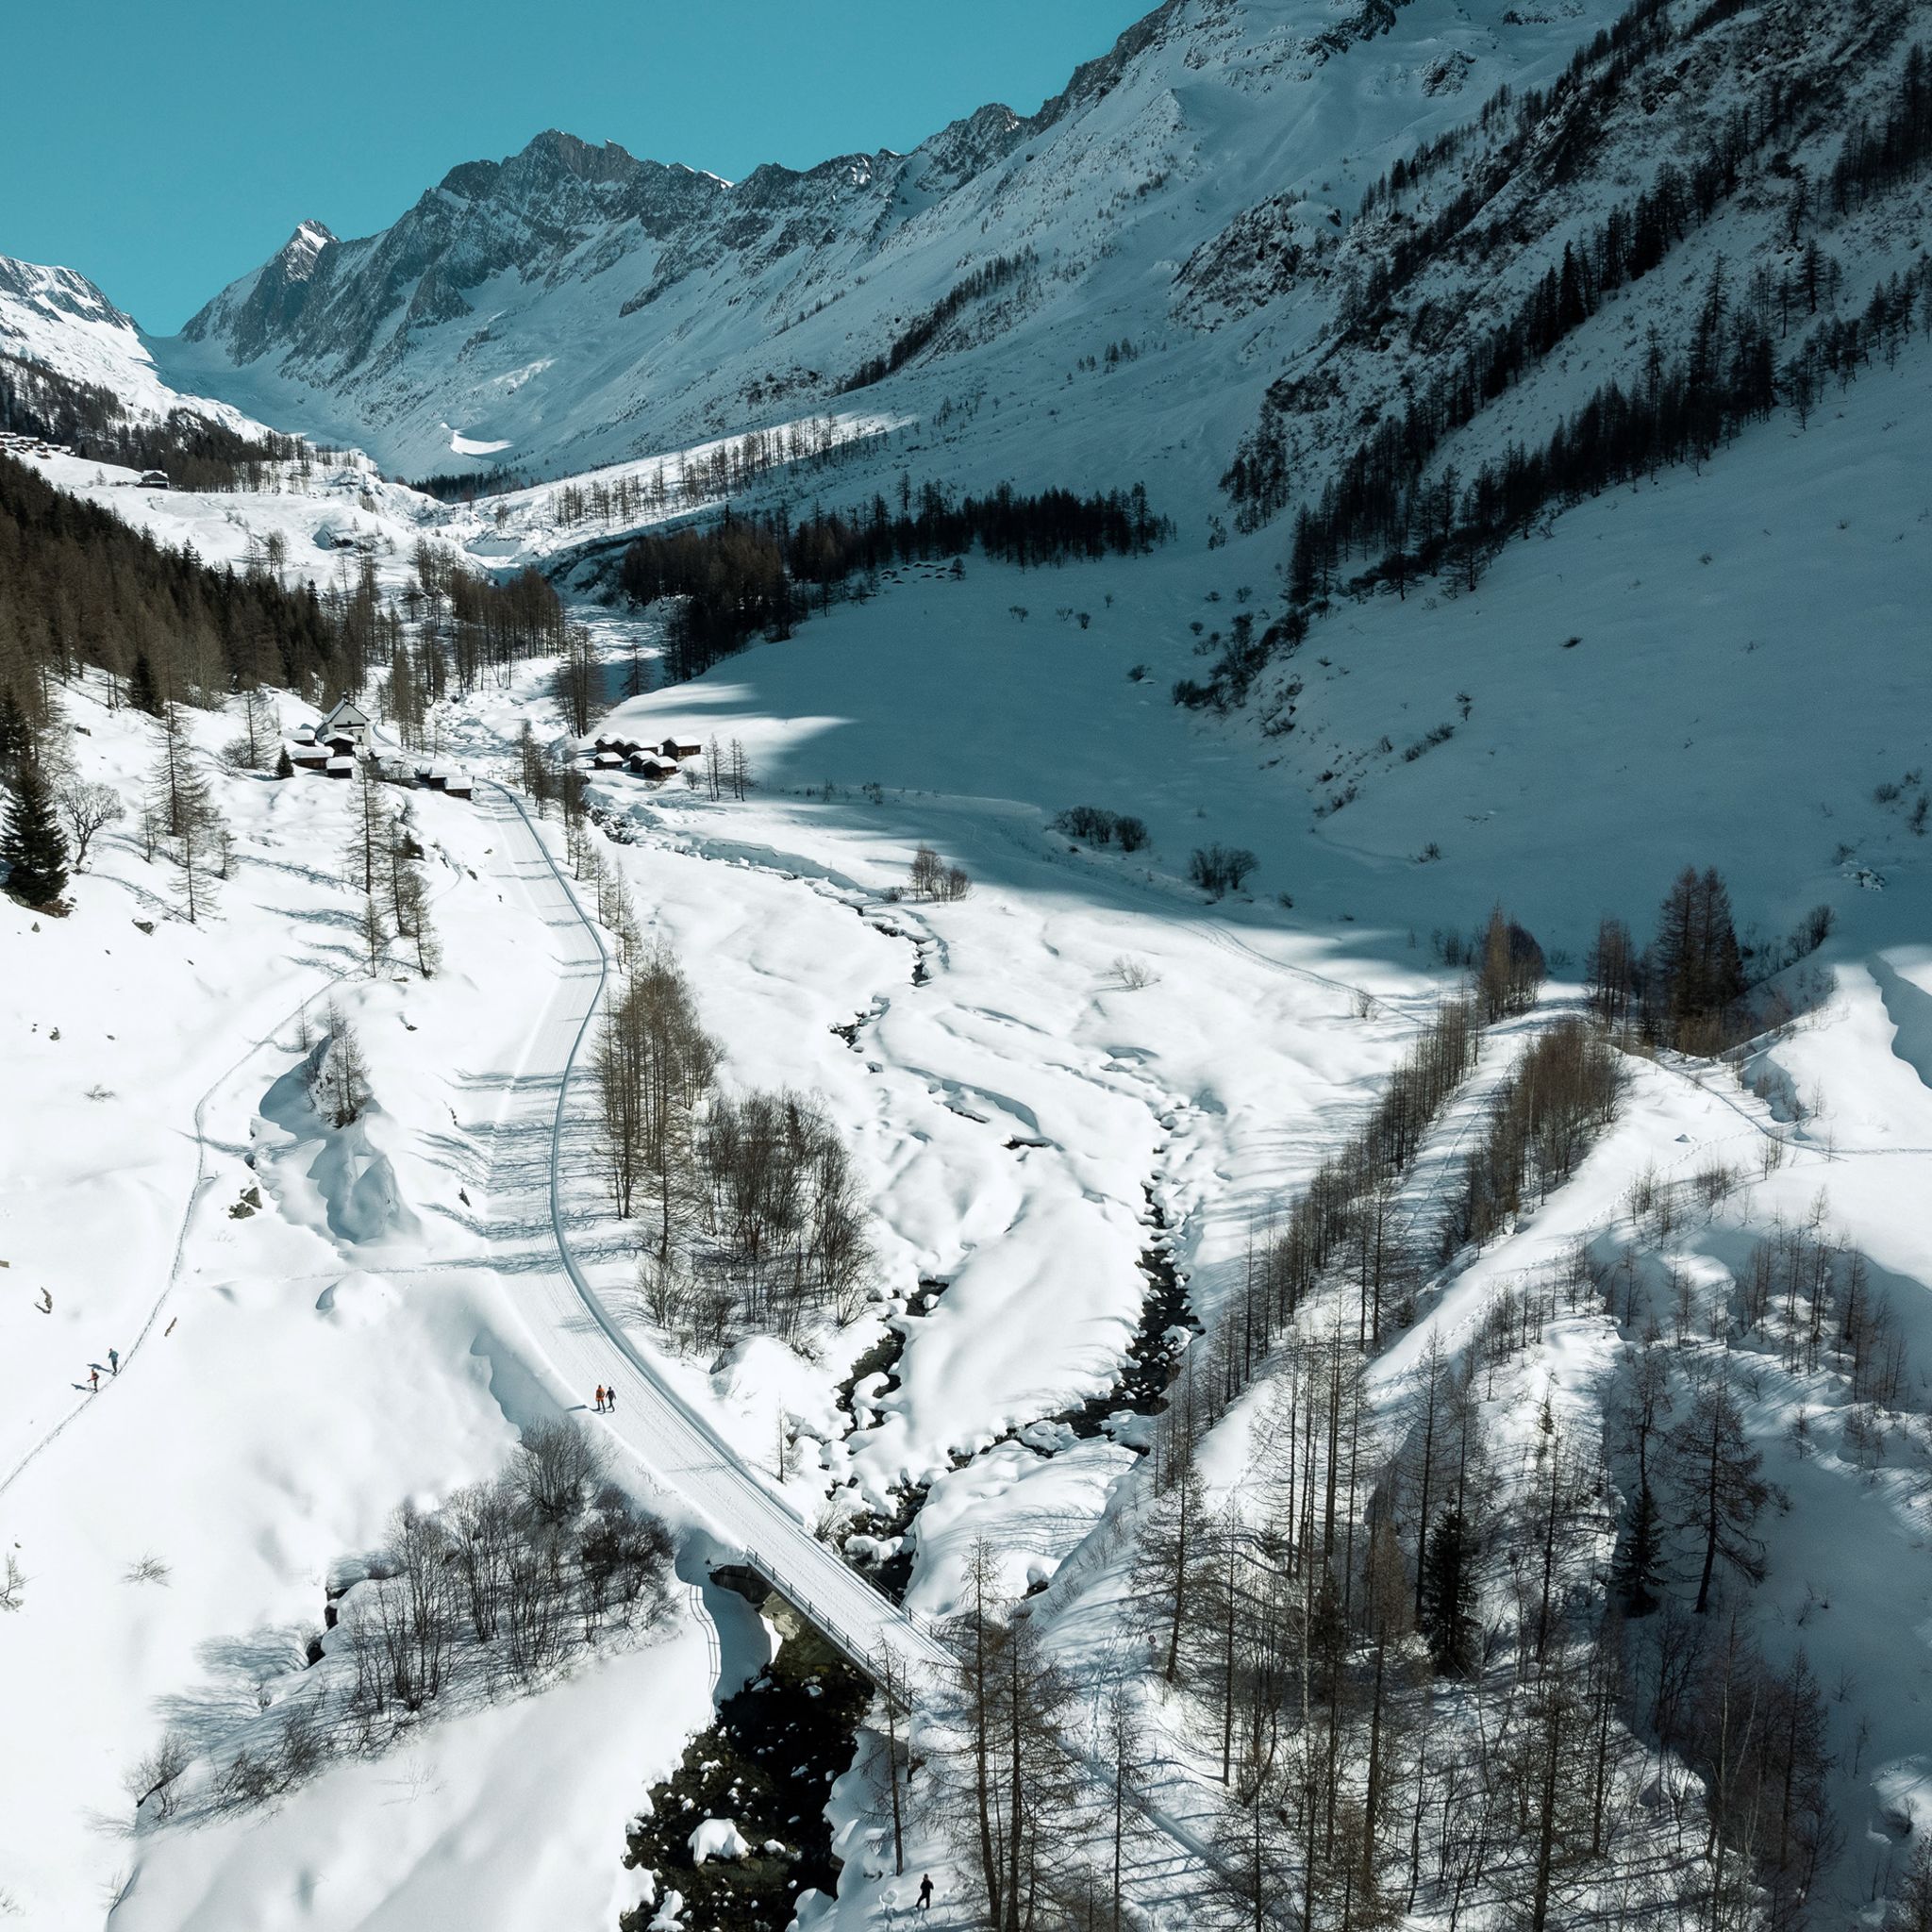 Le sentier de randonnée hivernale vers la Fafleralp. Valais, Suisse